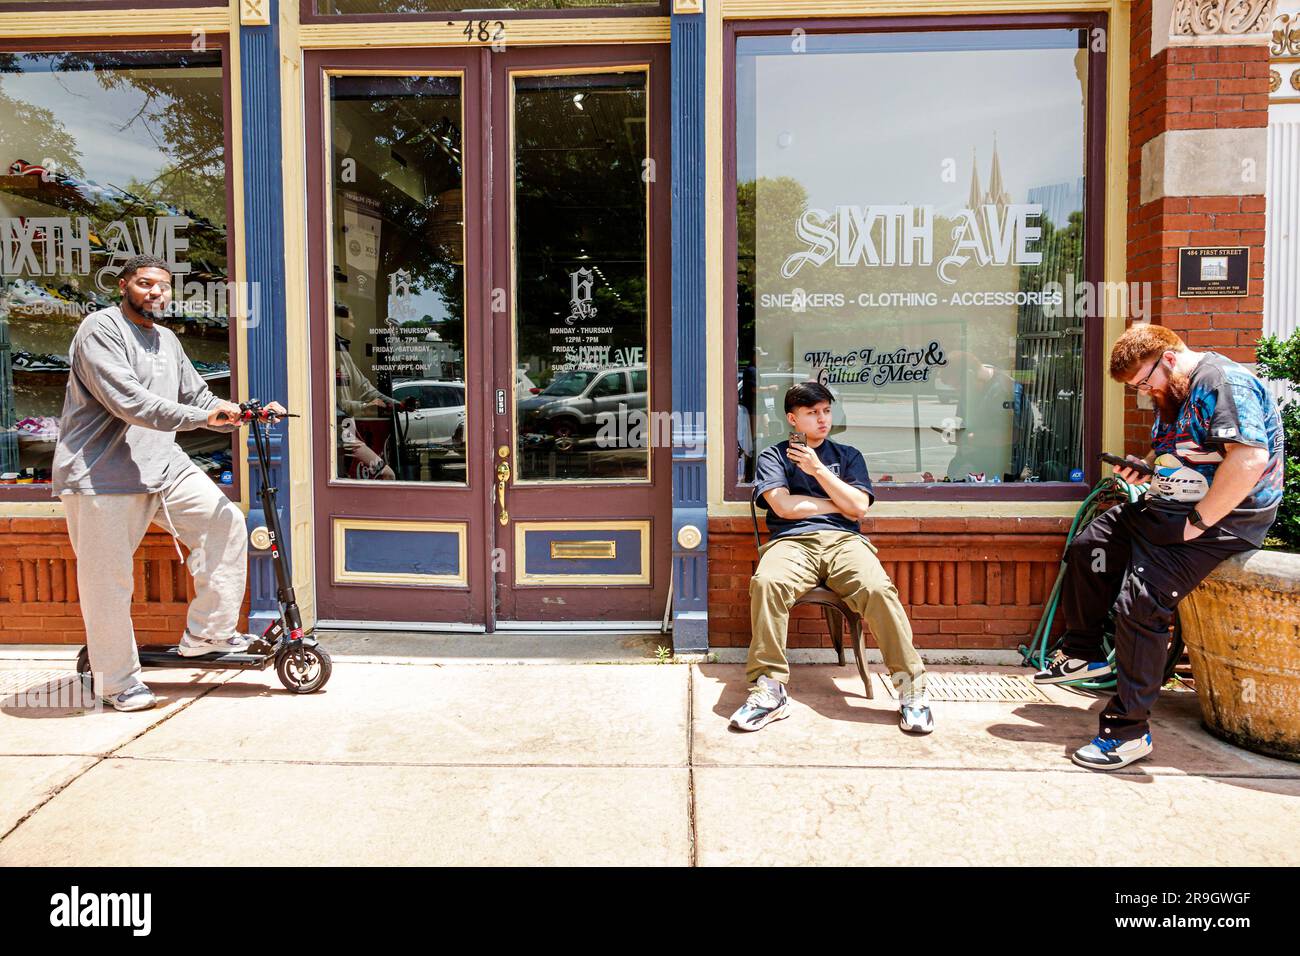 Macon Georgia, junge Unternehmer außerhalb des Geschäfts Sixth Ave, schwarzer afroamerikanischer Mann, Außenansicht, Gebäude, Vordereingang Stockfoto